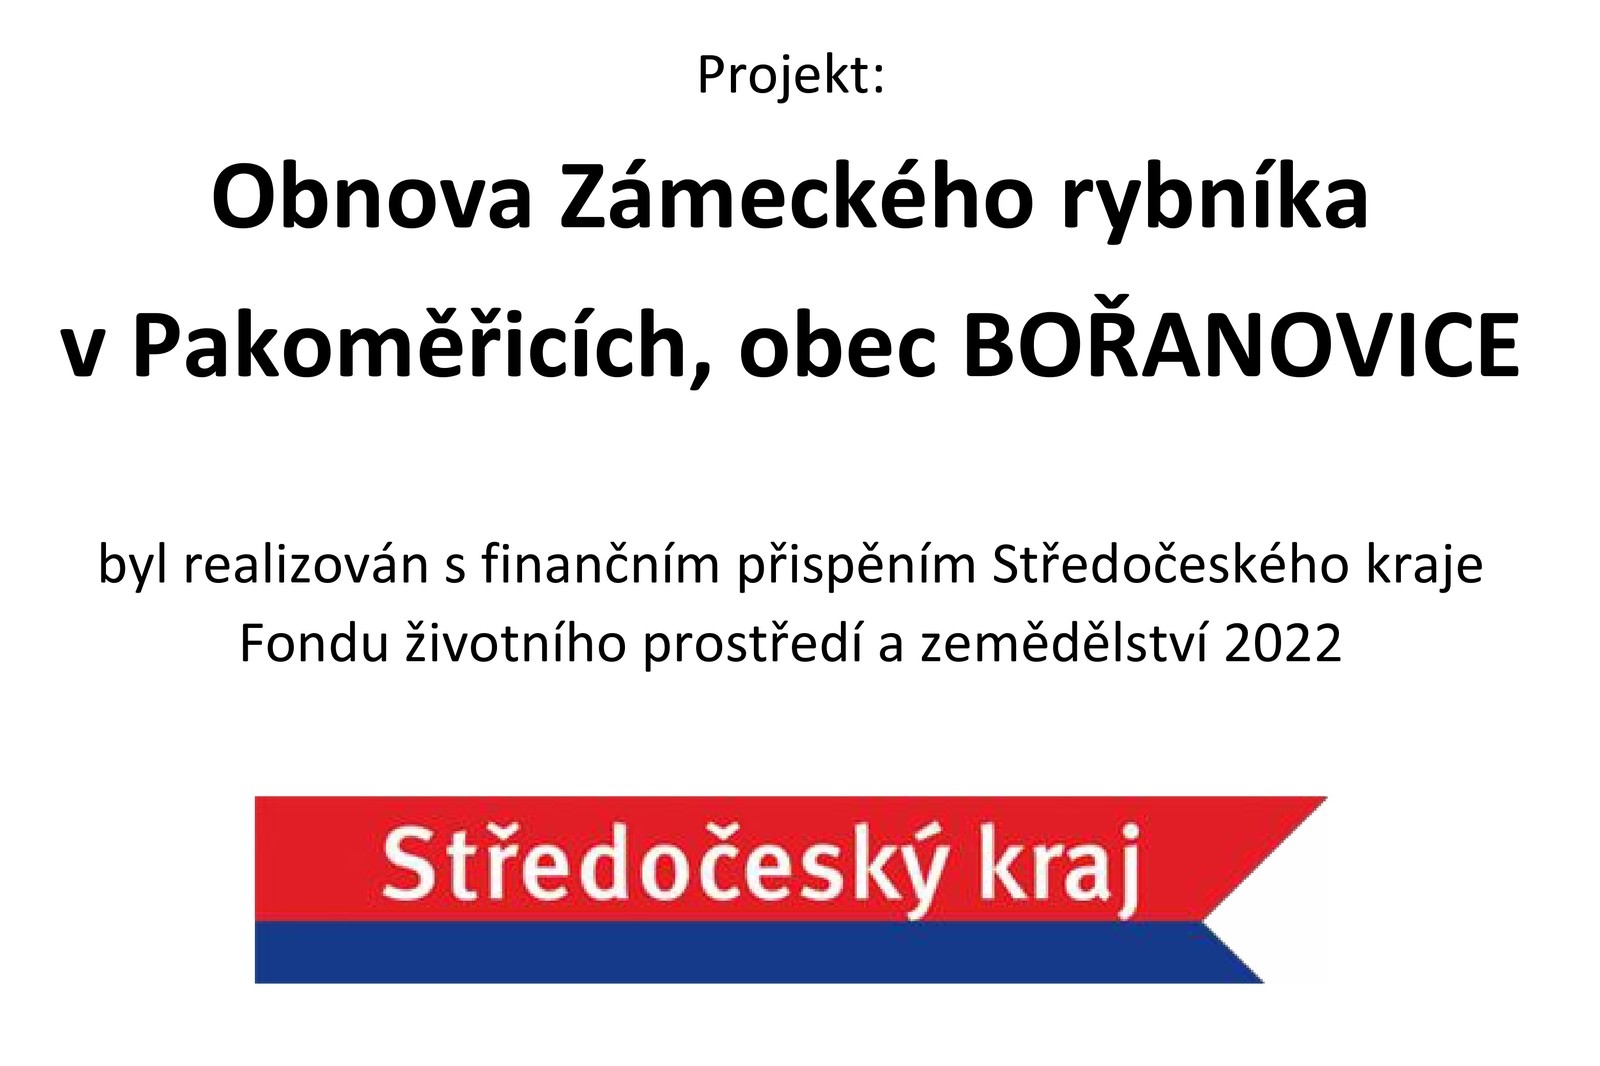 Publicita STČK - Obnova Zámeckého rybníka v Pakoměřicích.jpg